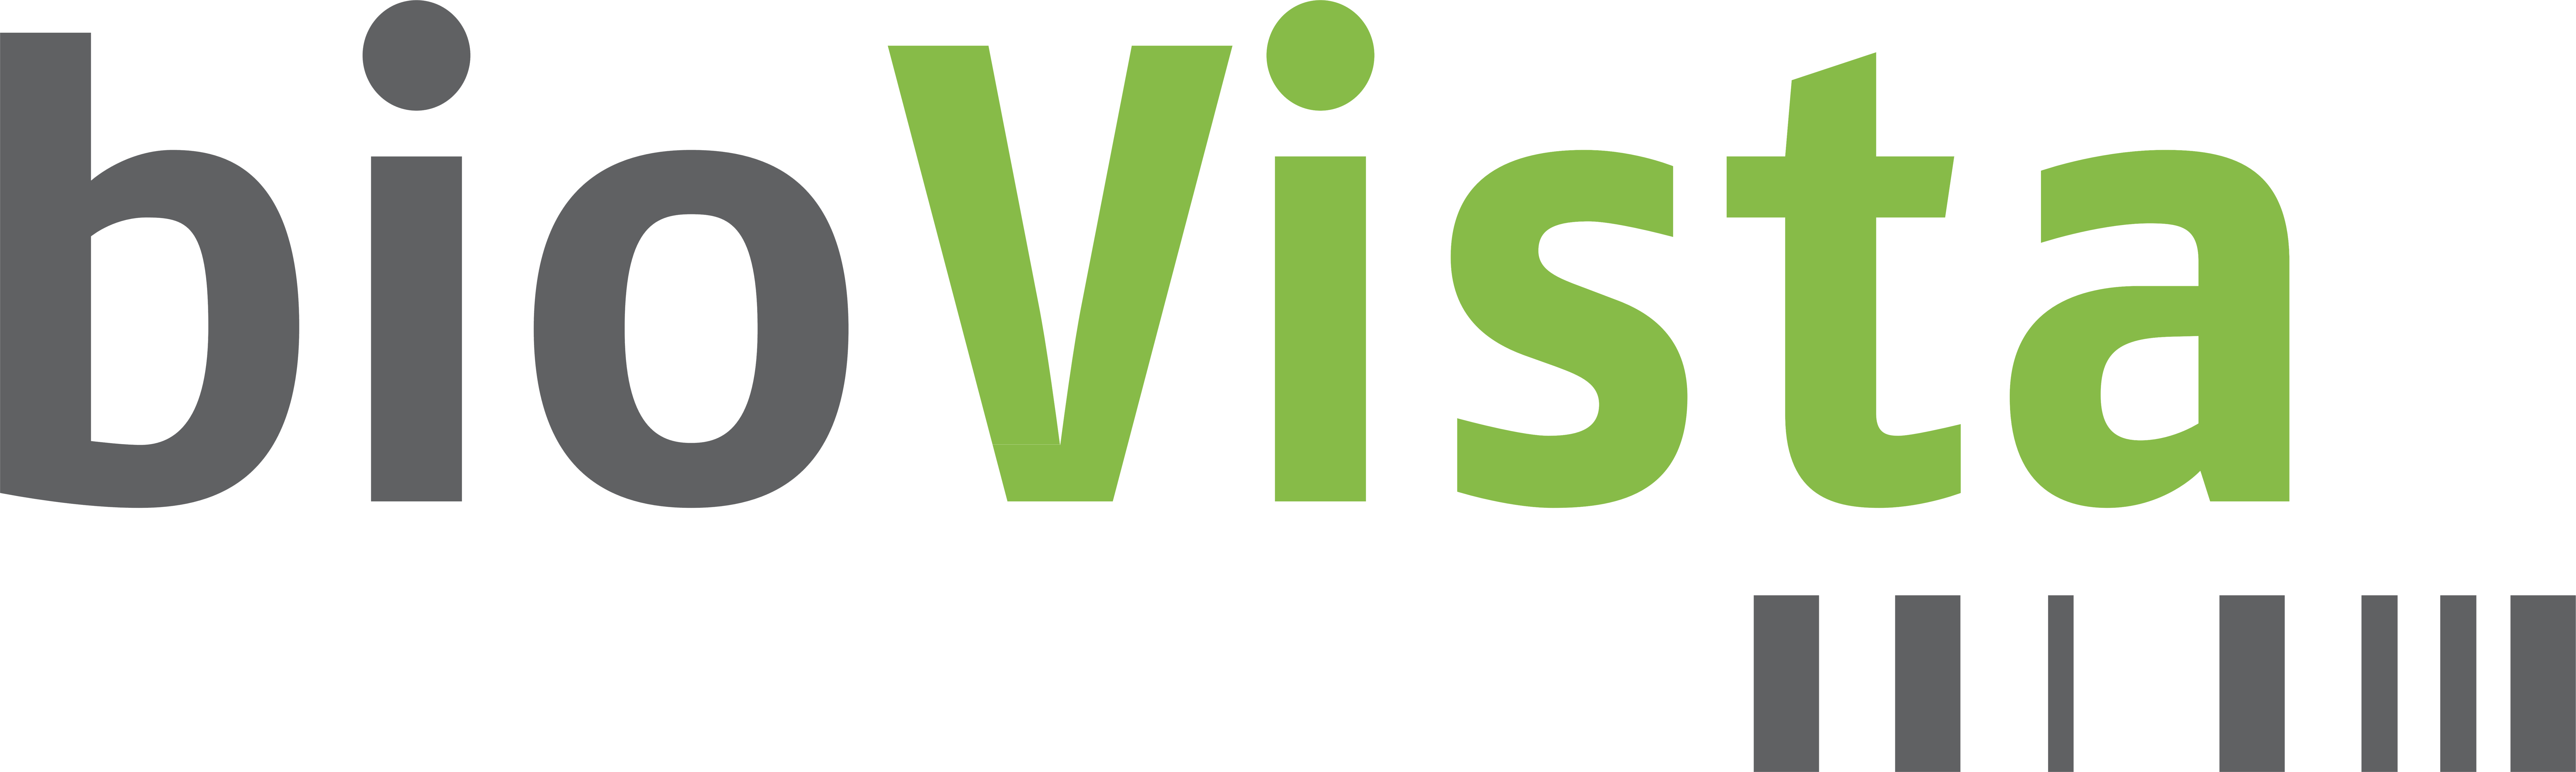 bioVista Logo transparent